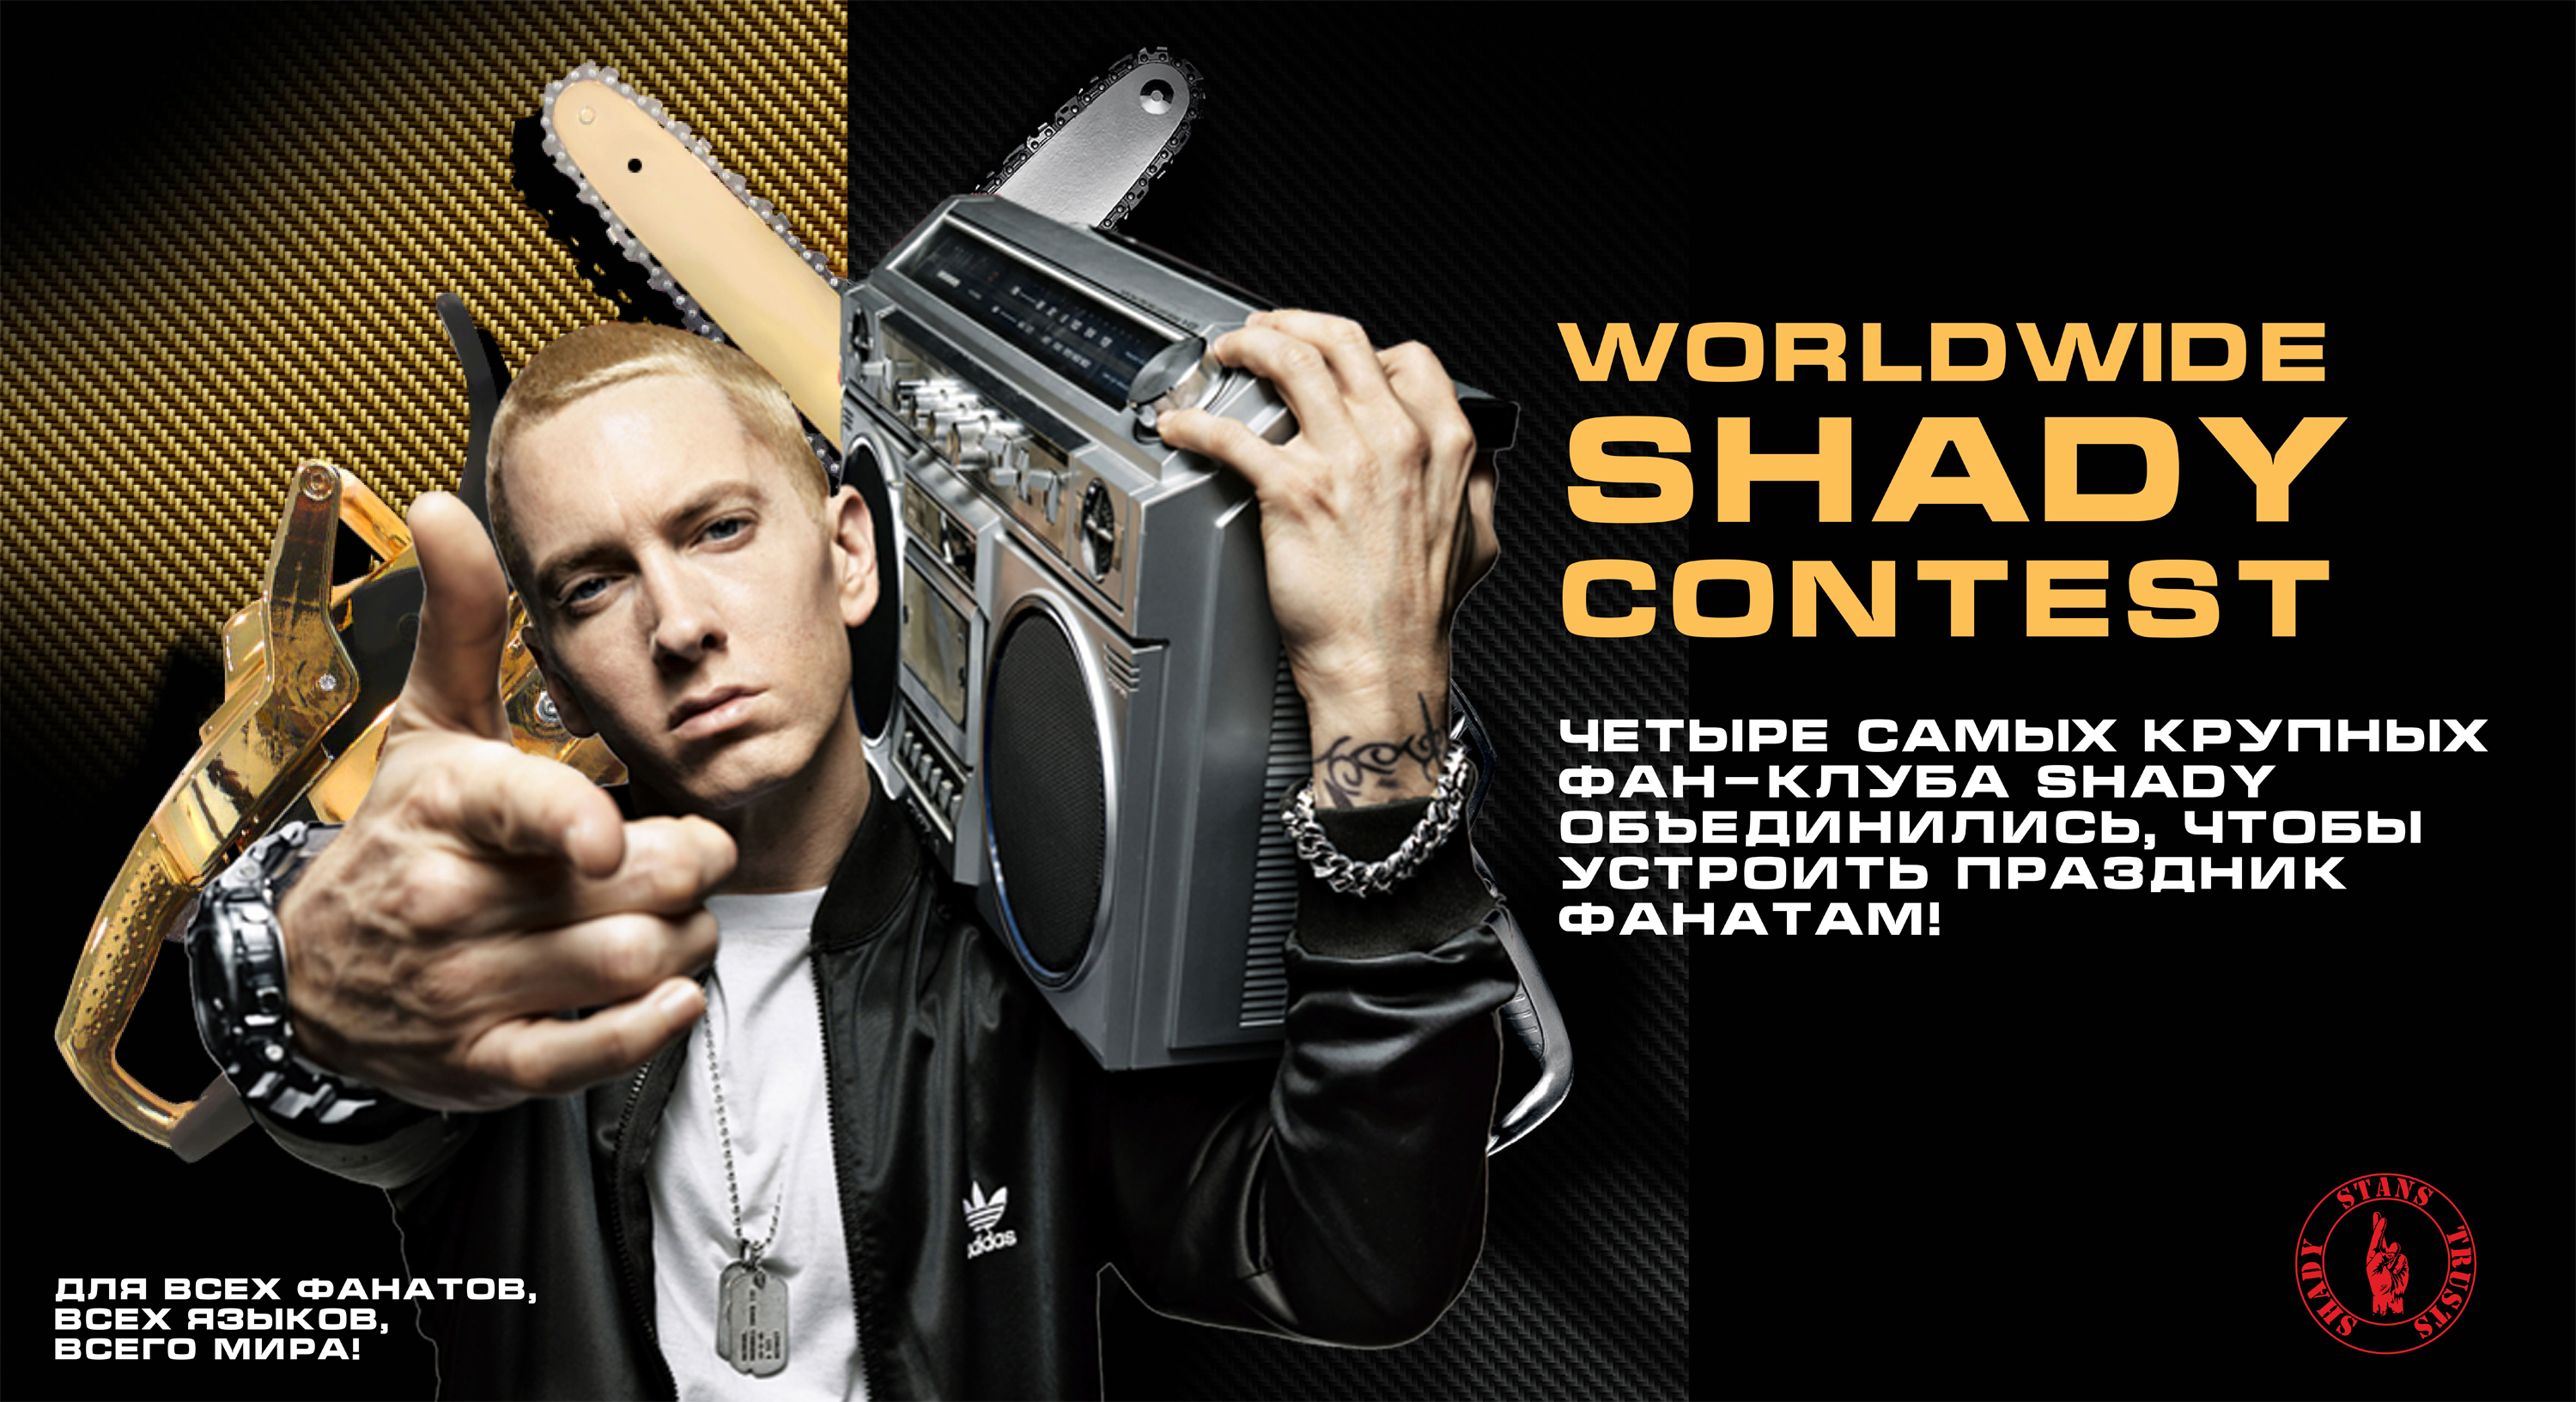 Worldwide Shady Contest: Четыре самых крупных фан-клуба Shady объединились, чтобы устроить праздник фанатам!